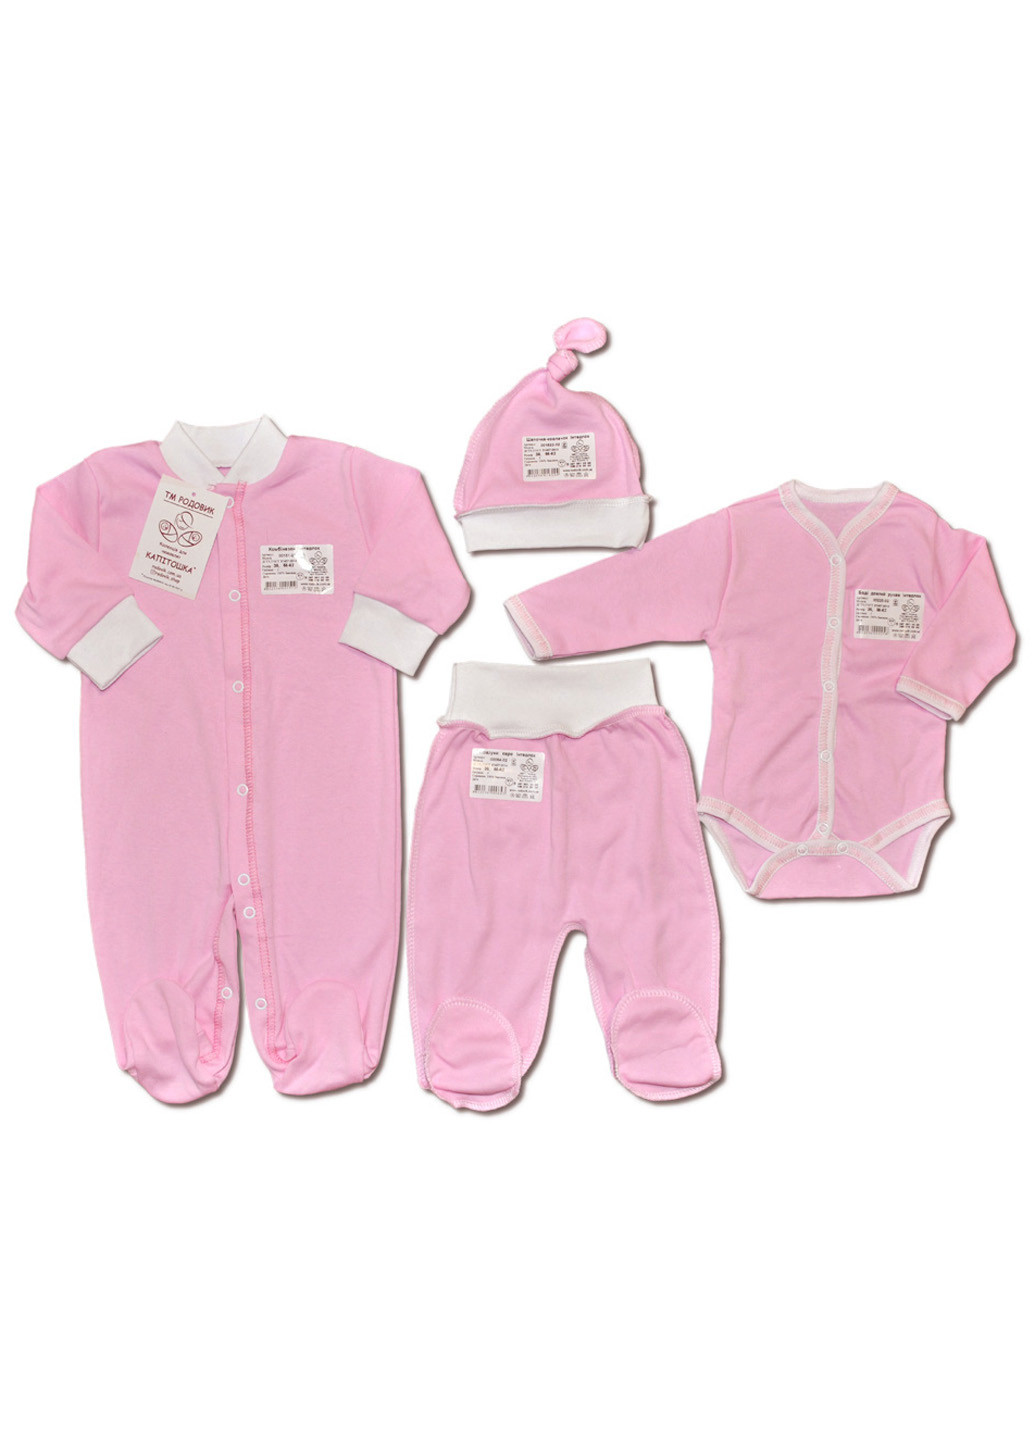 Розовый демисезонный комплект одежды для малыша №6 (4 предмета) тм коллекция капитошка розовый Родовик комплект 06-КР